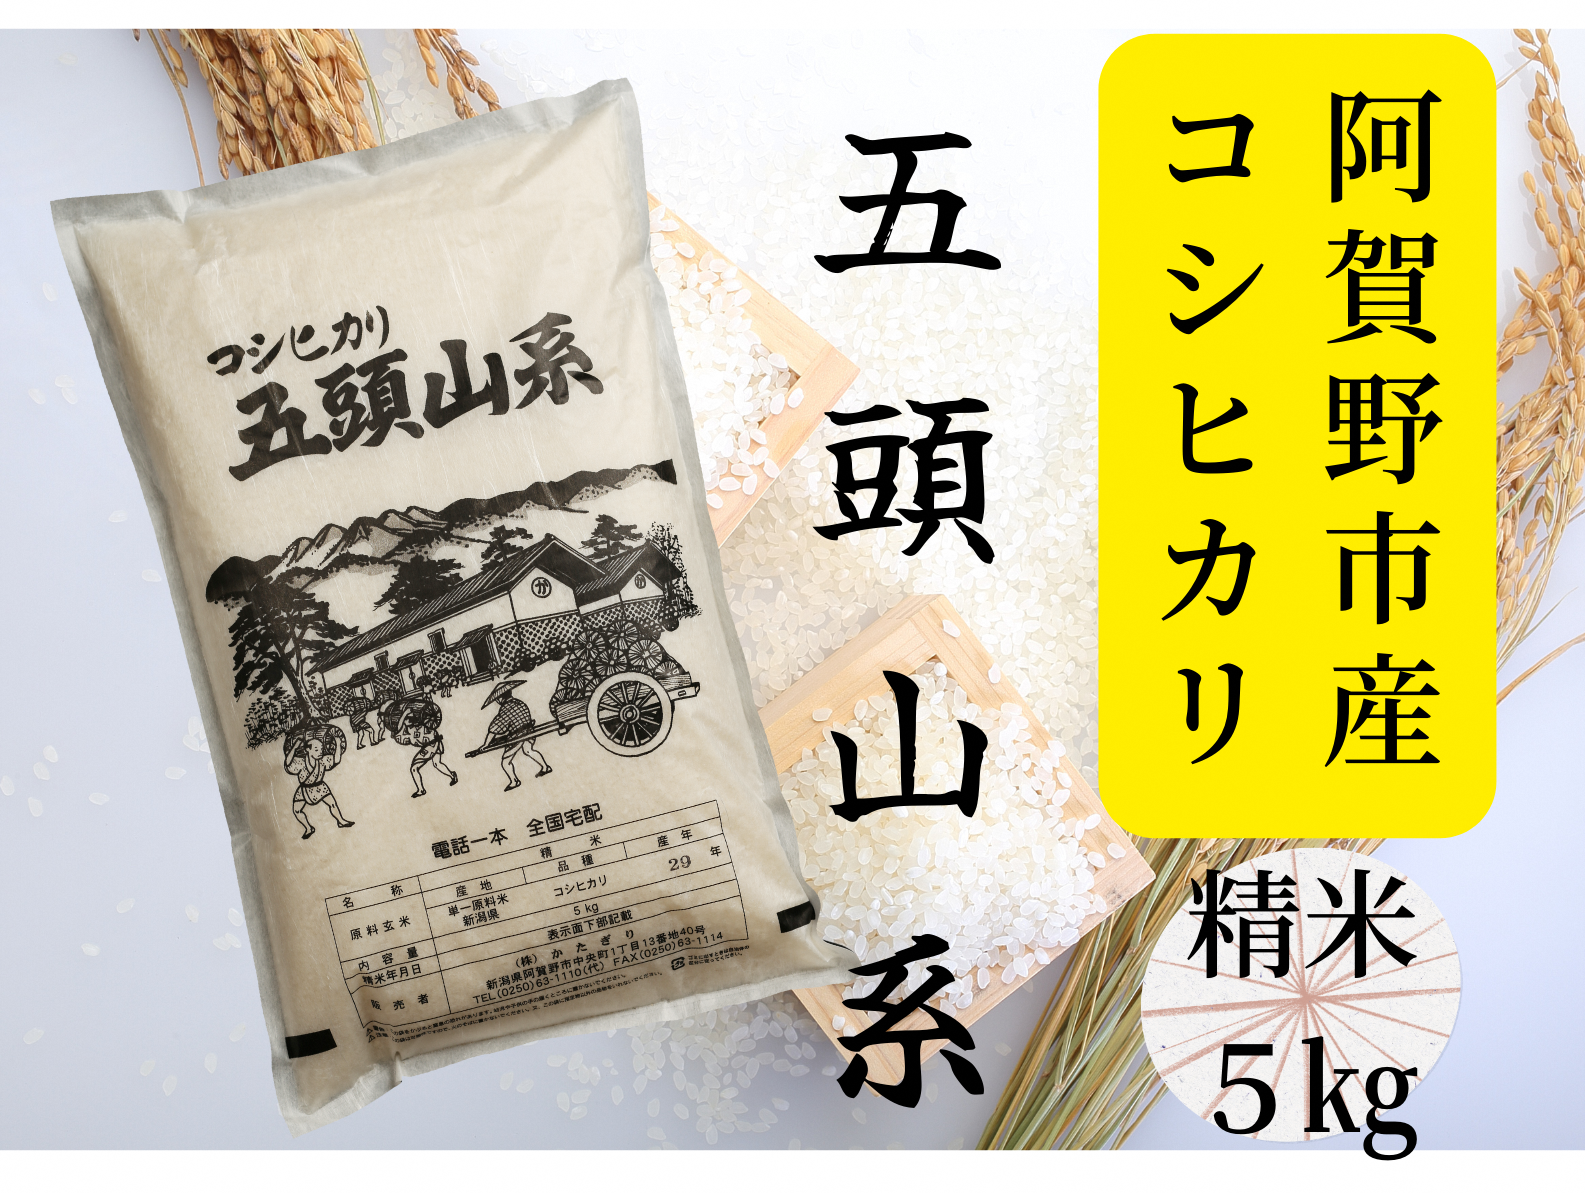 【新潟産コシヒカリ】 5kg 「五頭山系」 米屋のこだわり阿賀野市産 米屋かたぎり 1E01009